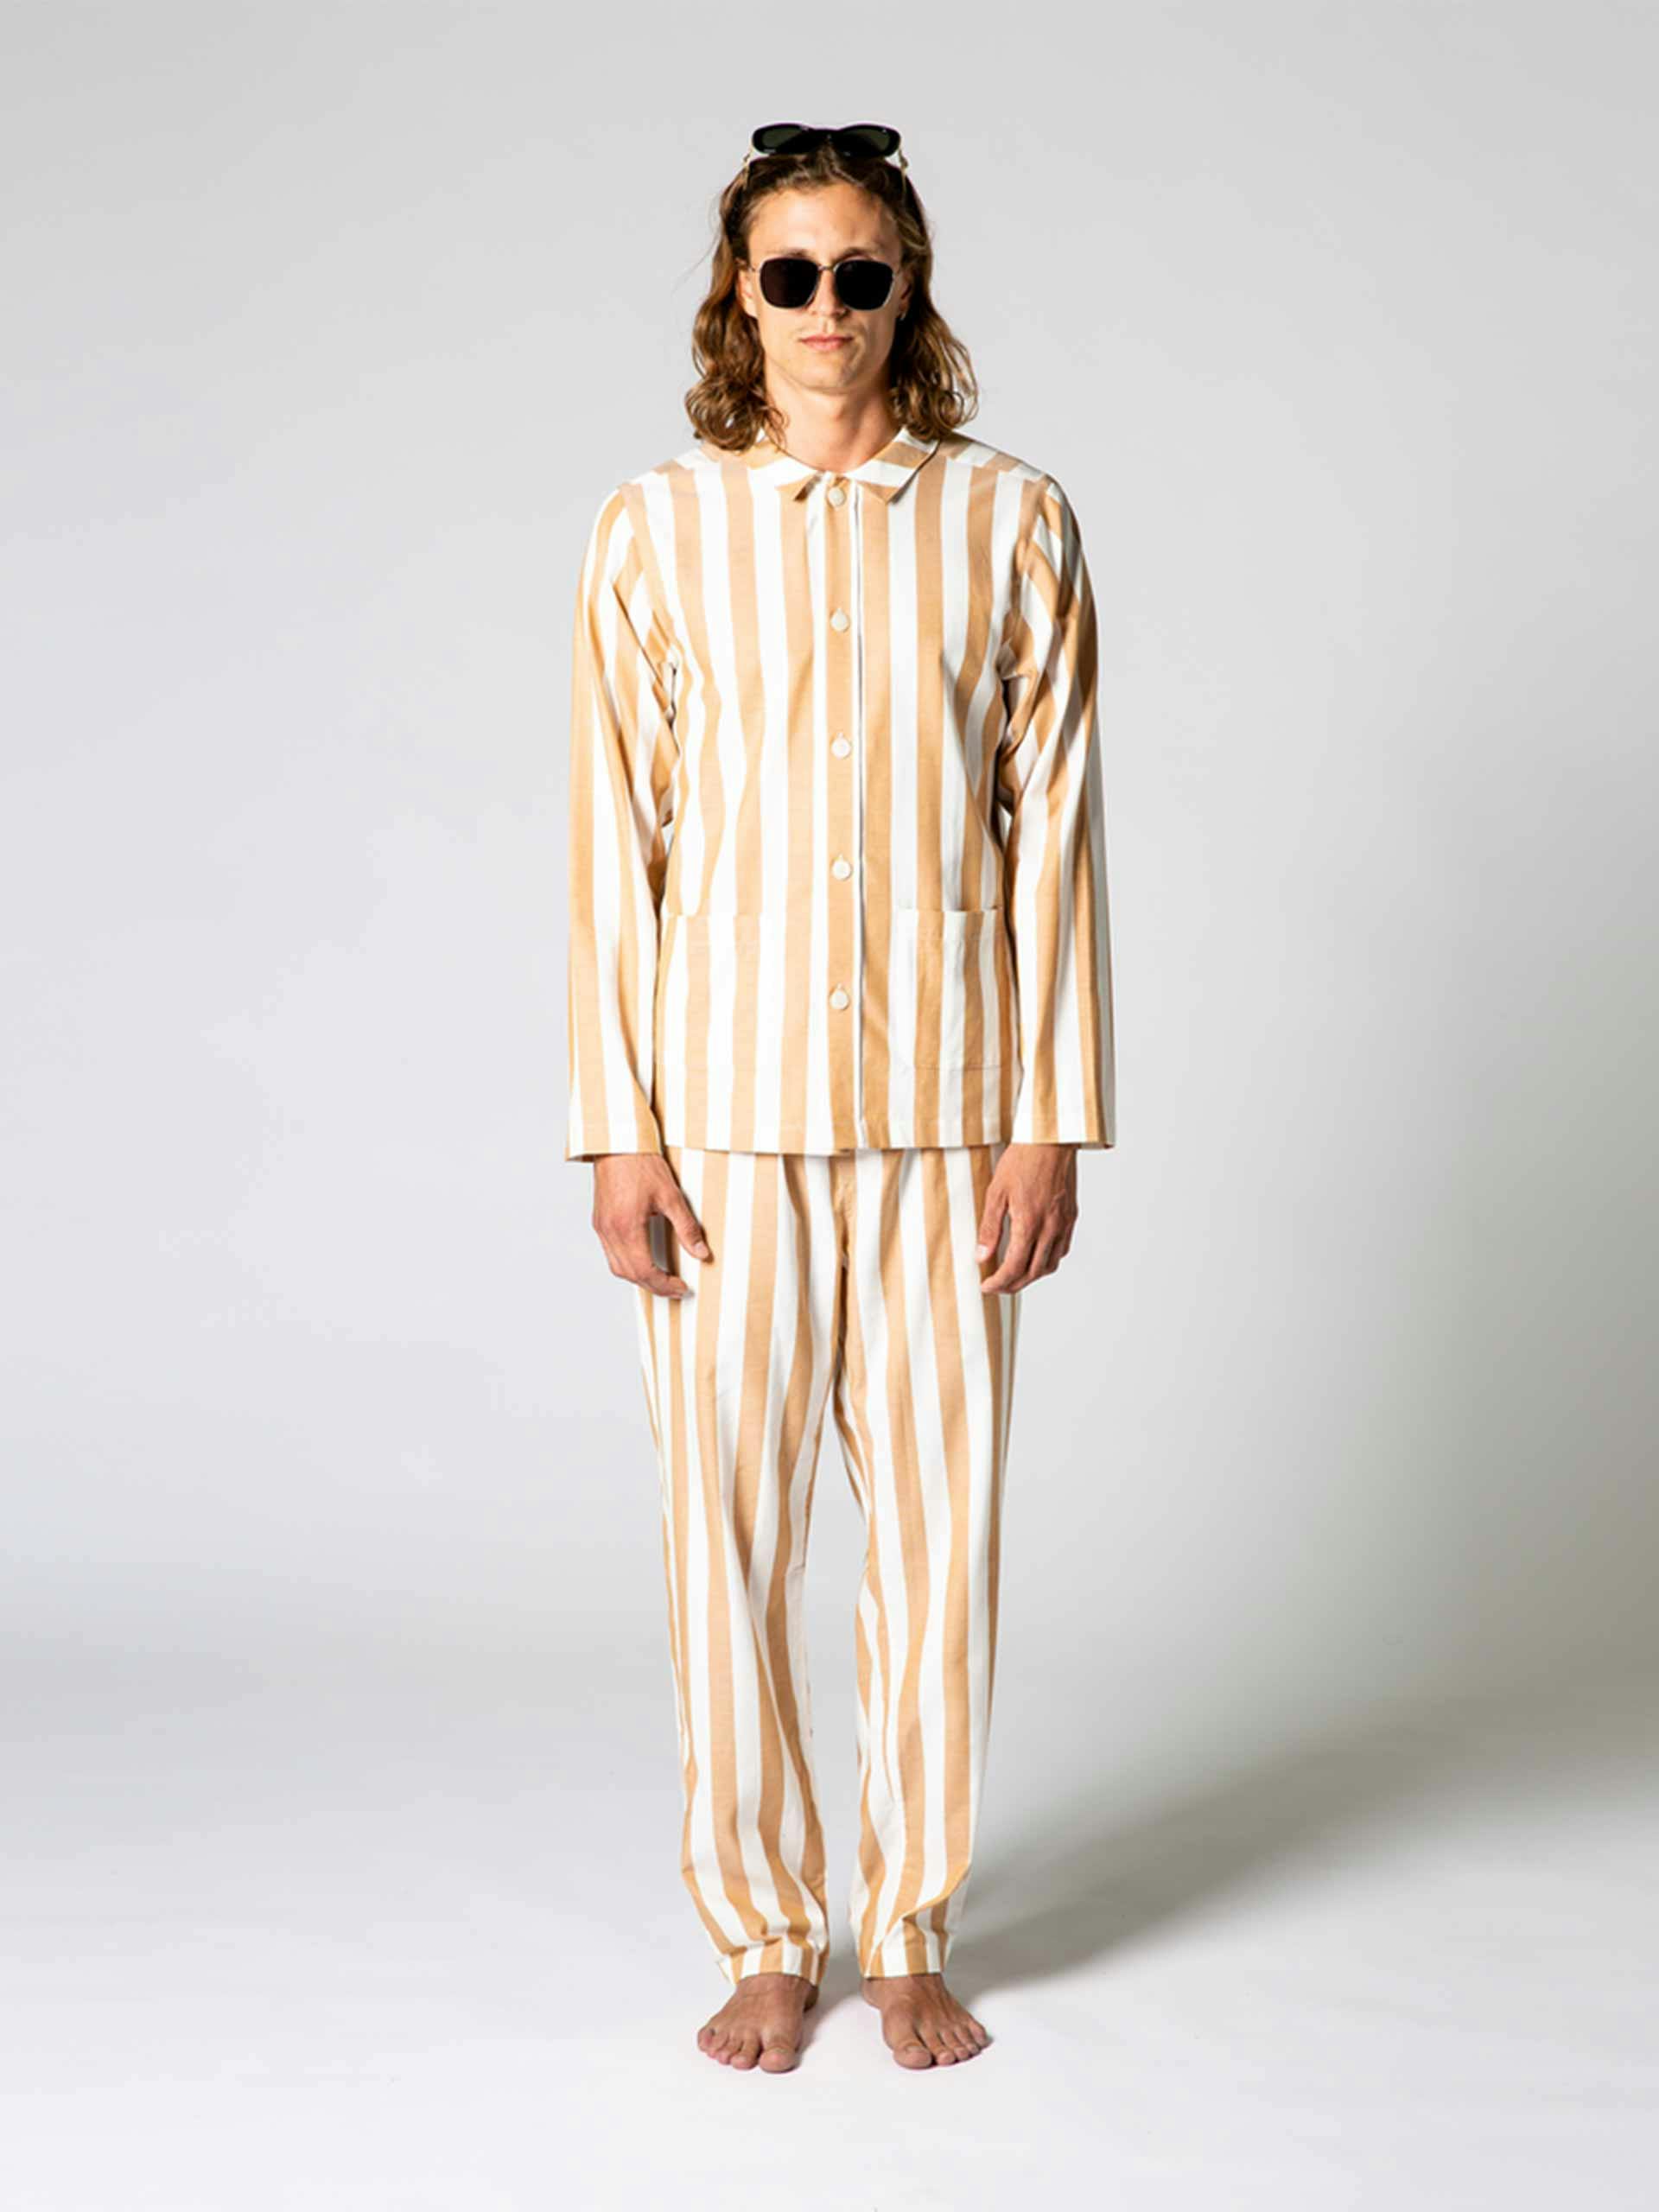 Mustard and white striped cotton pyjamas